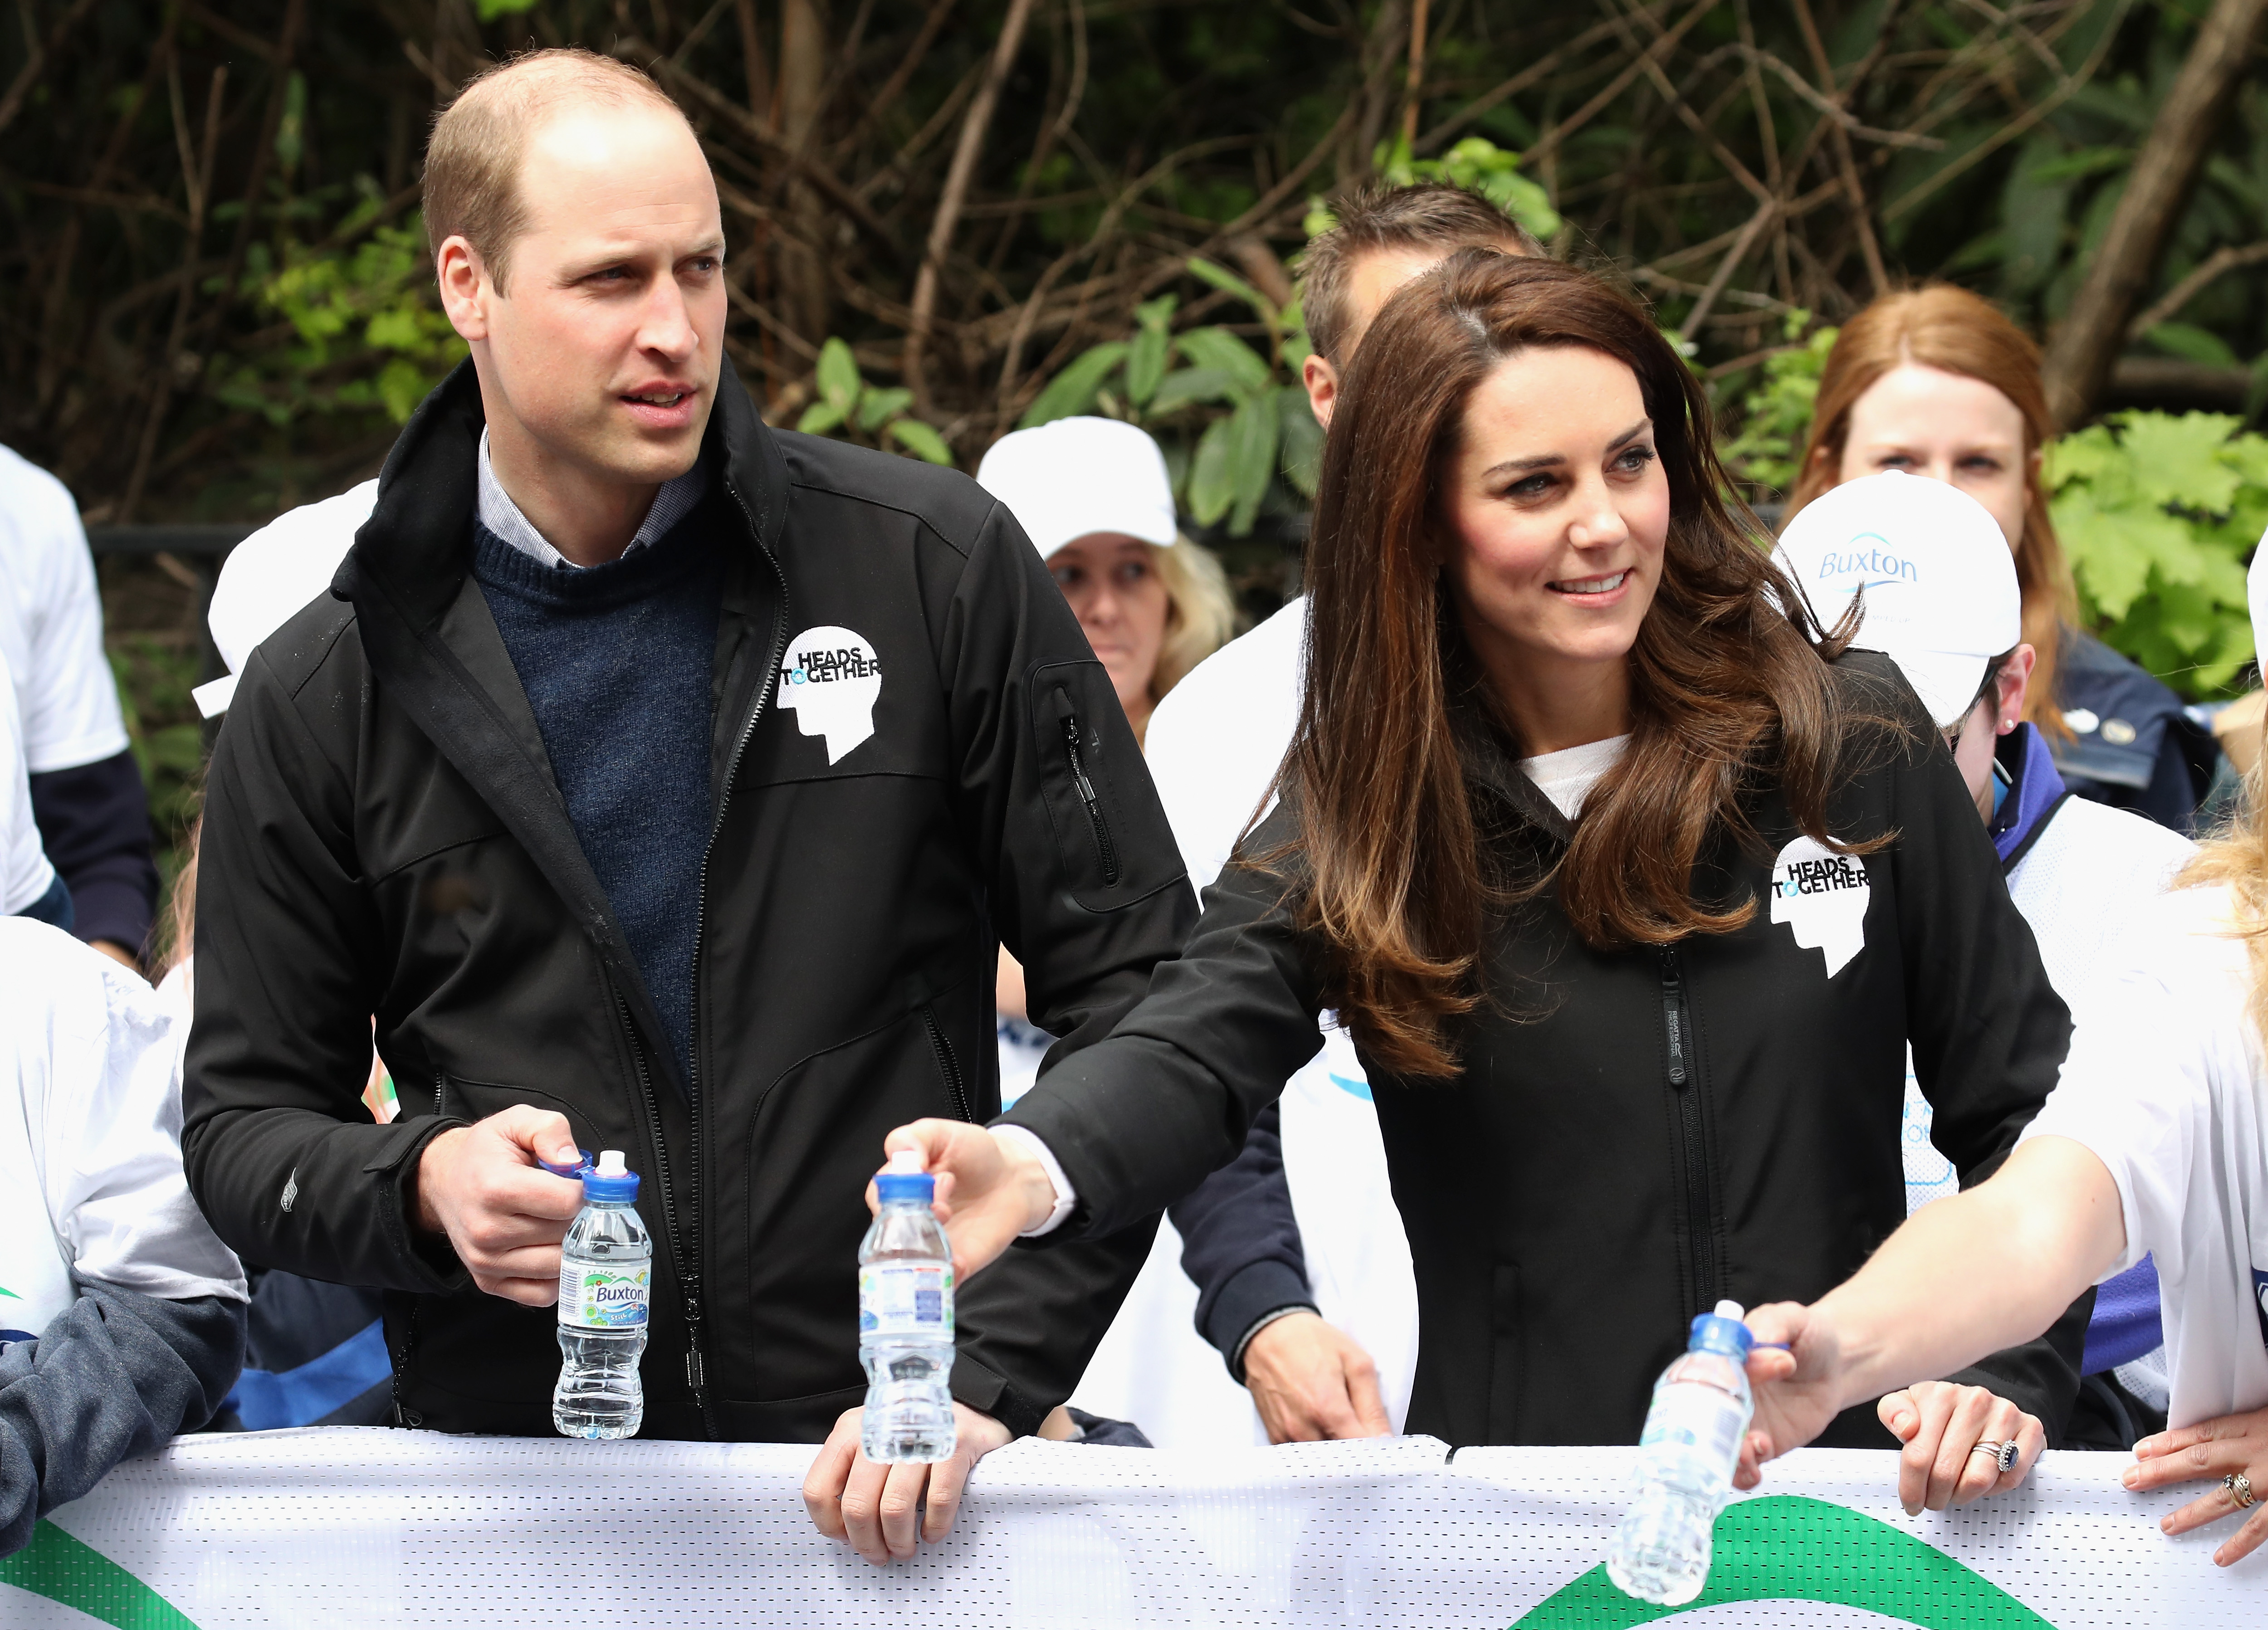 Състезател се пошегува с принц Уилям и съпругата му Кейт по време на Лондонския маратон. Докато Кейт, Уилям и Хари раздаваха вода на състезателите, един от тях отвори бутилката си и напръска с вода Кейт и Уилям.